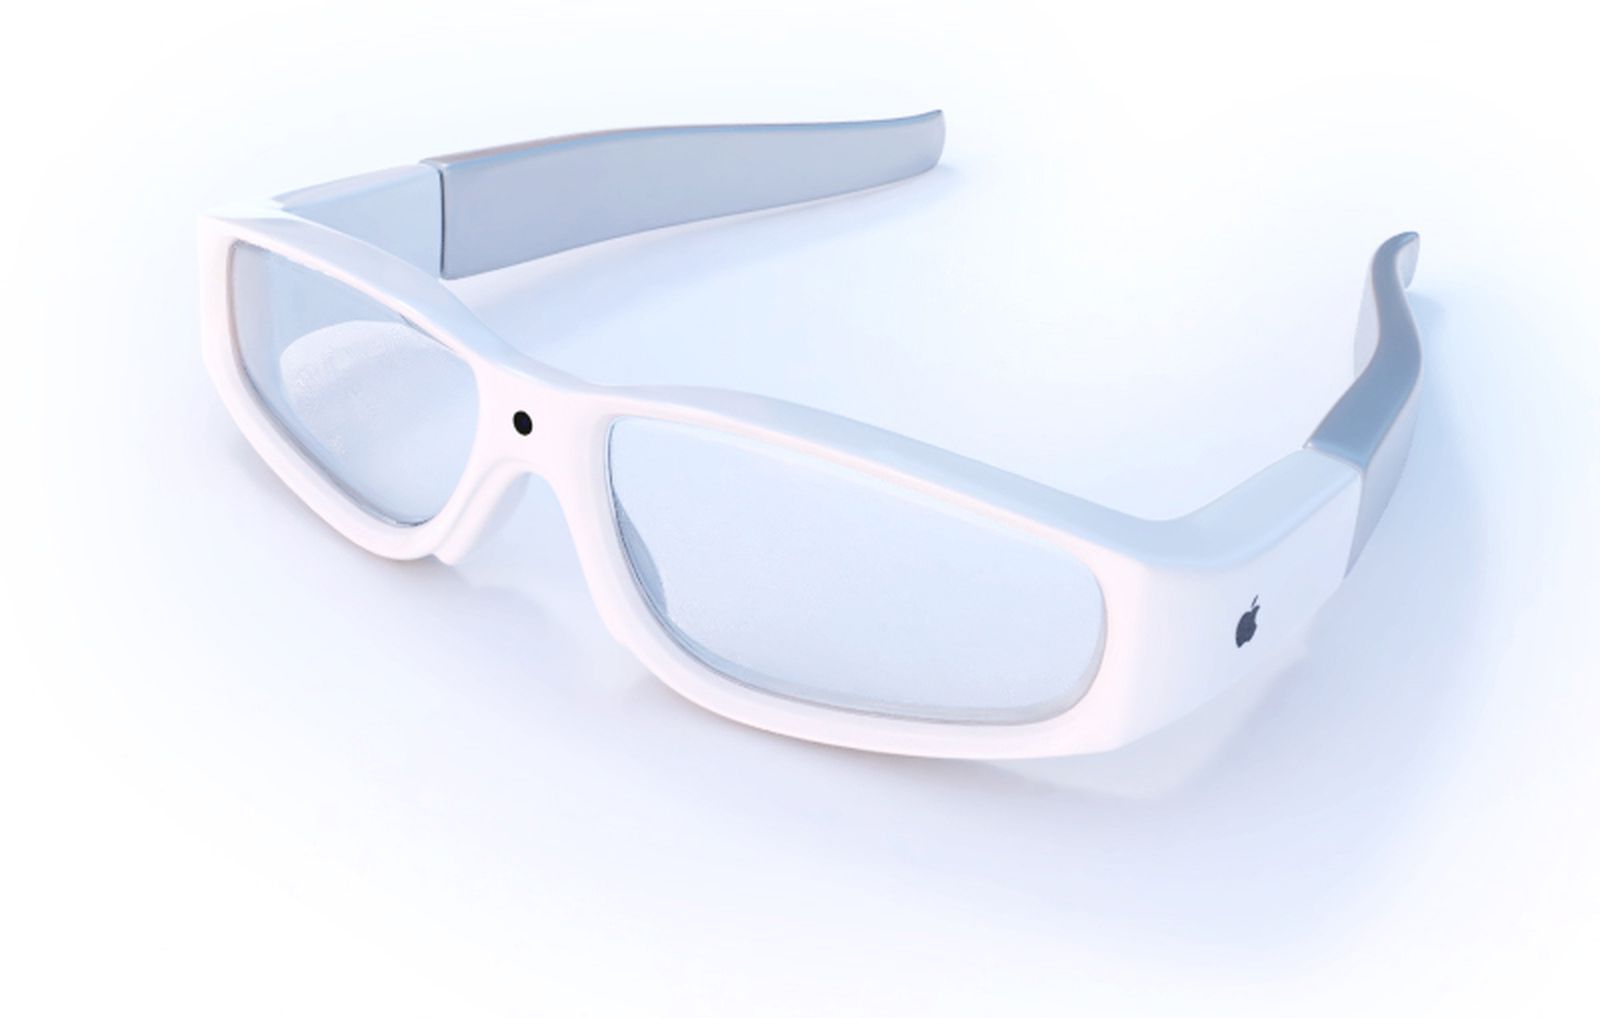 Τα γυαλιά AR της Apple θα διαθέτουν ένα προηγμένο περιβάλλον χρήσης με «hand gestures»